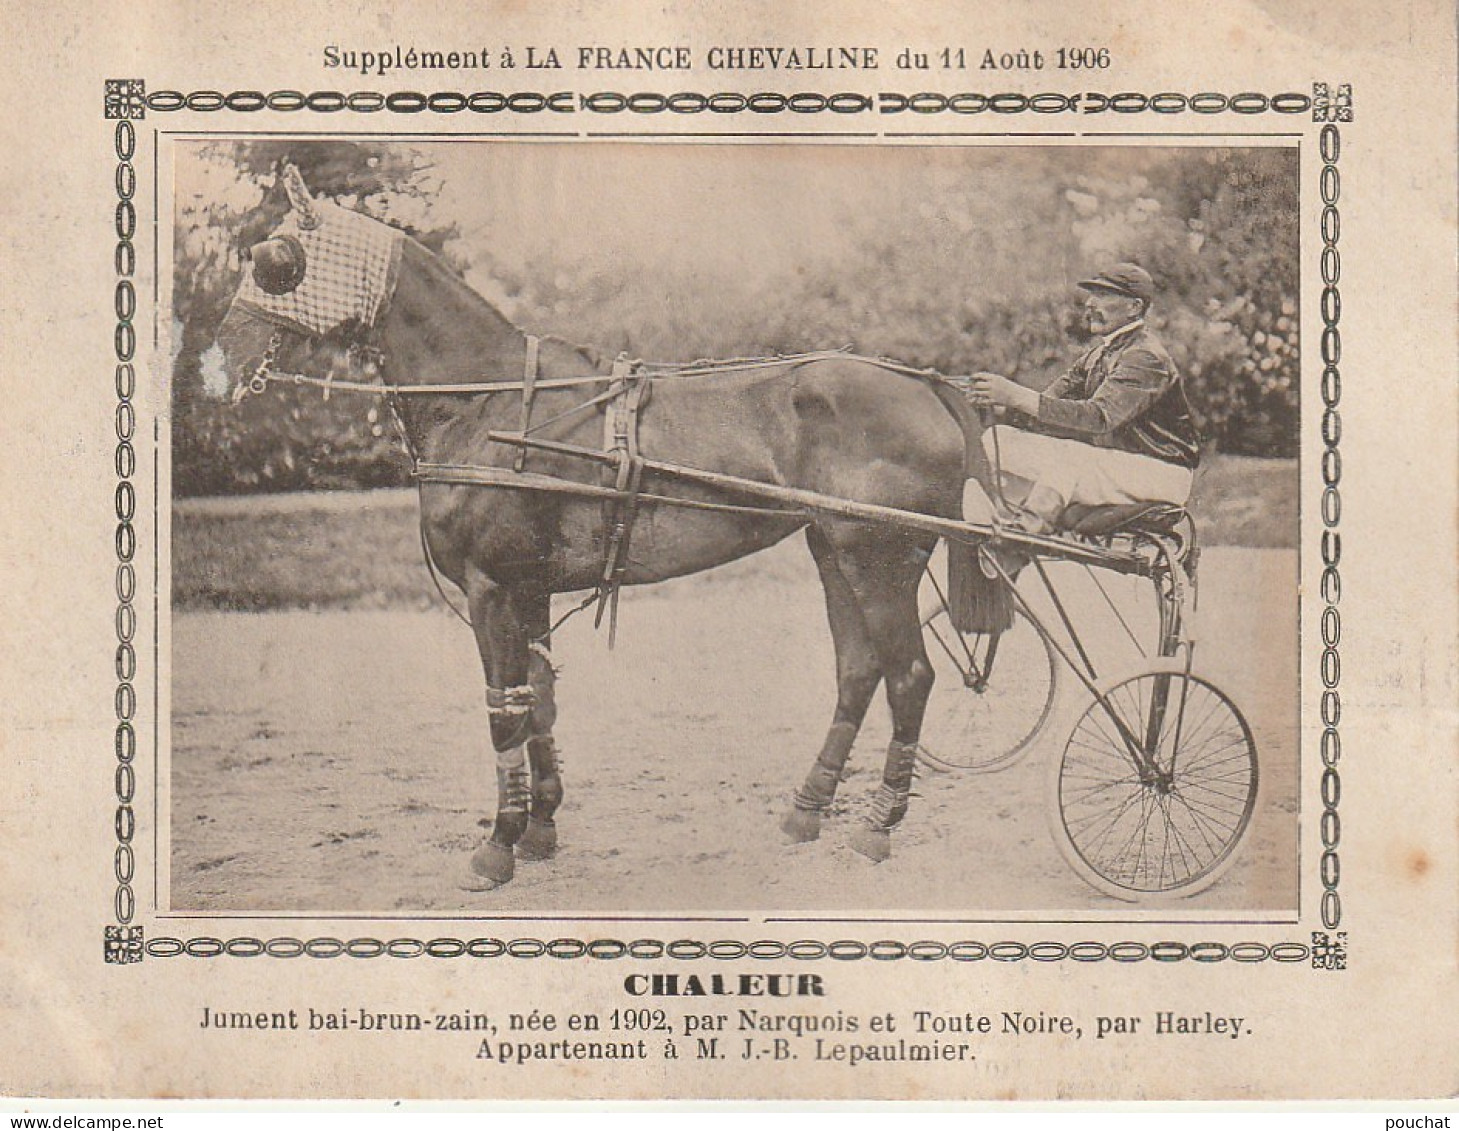 AA+ - " CHALEUR " - JUMENT APPARTENANT A  M. J. B. LEPAULMIER - SUPPLEMENT " FRANCE CHEVALINE " ( 11 AOUT 1906 ) - SULKY - Reitsport